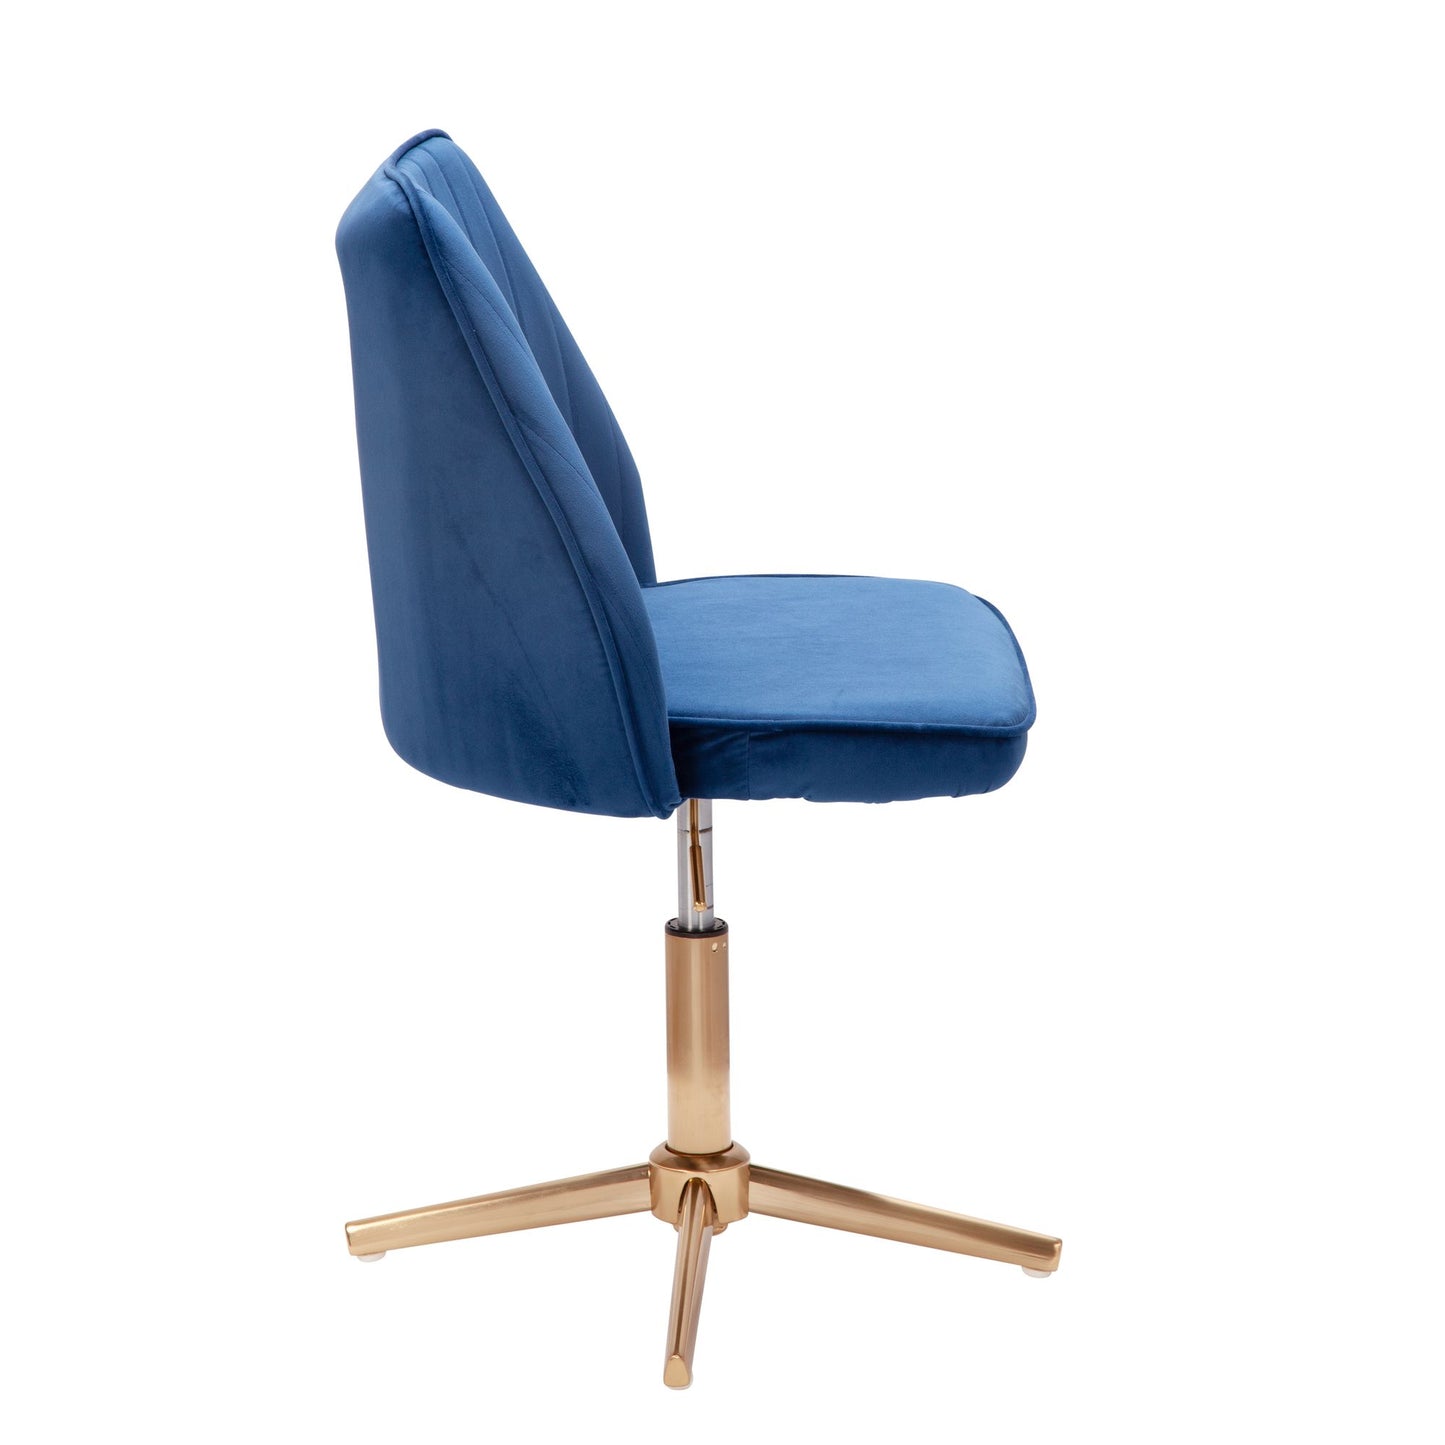 Chaise pivotante Nancy's Norwich - Chaise de cuisine - Chaise de bureau - Chaise coquille - Réglable - Design - Velours - Bleu - Moderne